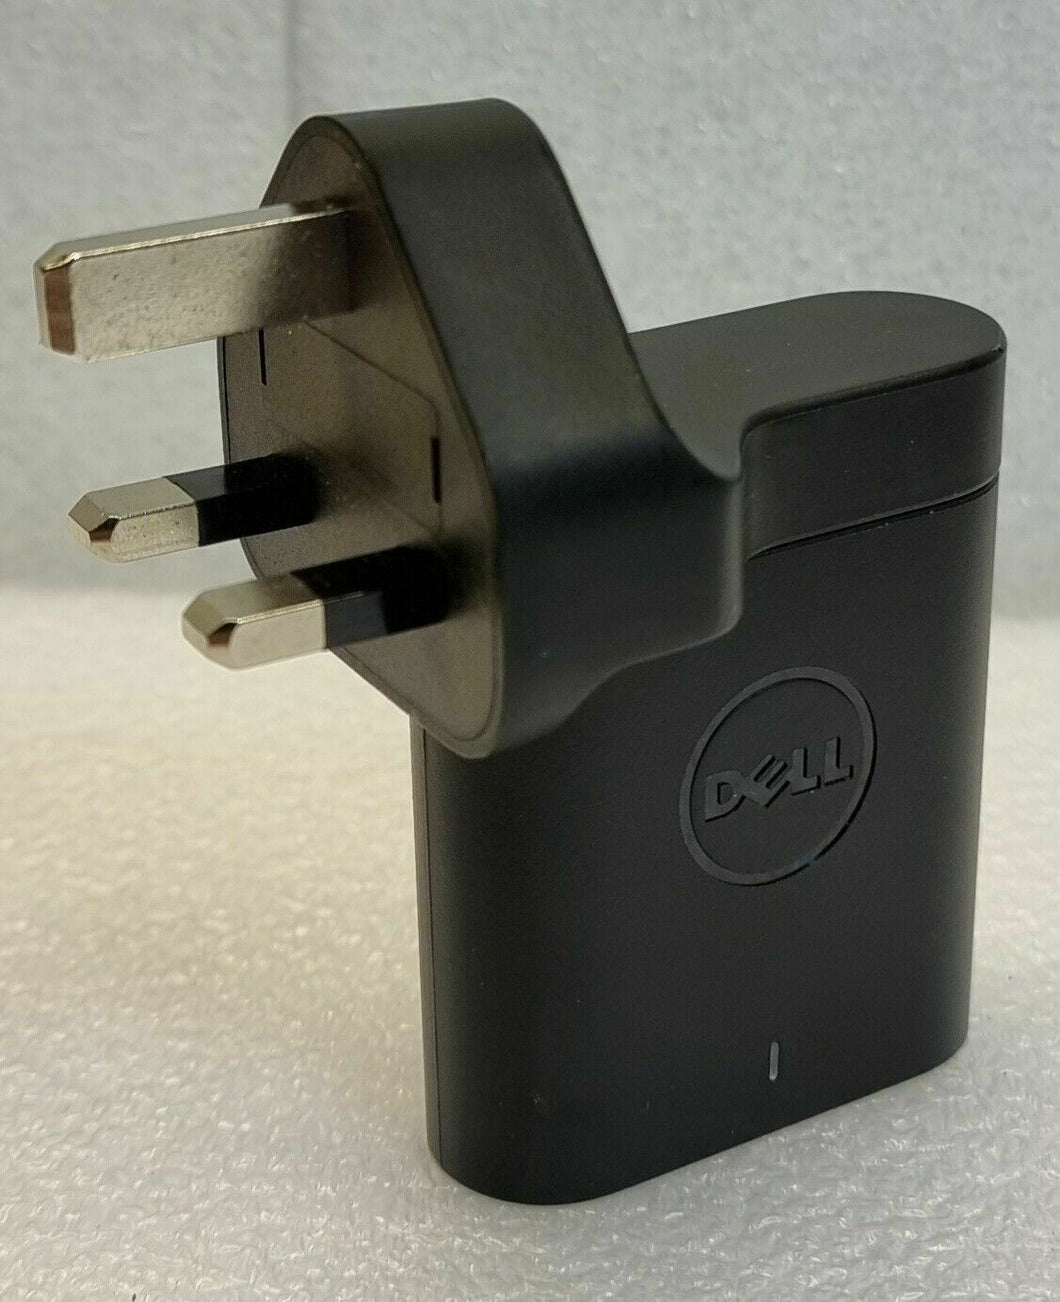 Dell Venue Pro 0KTCCJ 24W 19.5V 1.2A / 5V 2A USB Power Adapter with UK plug